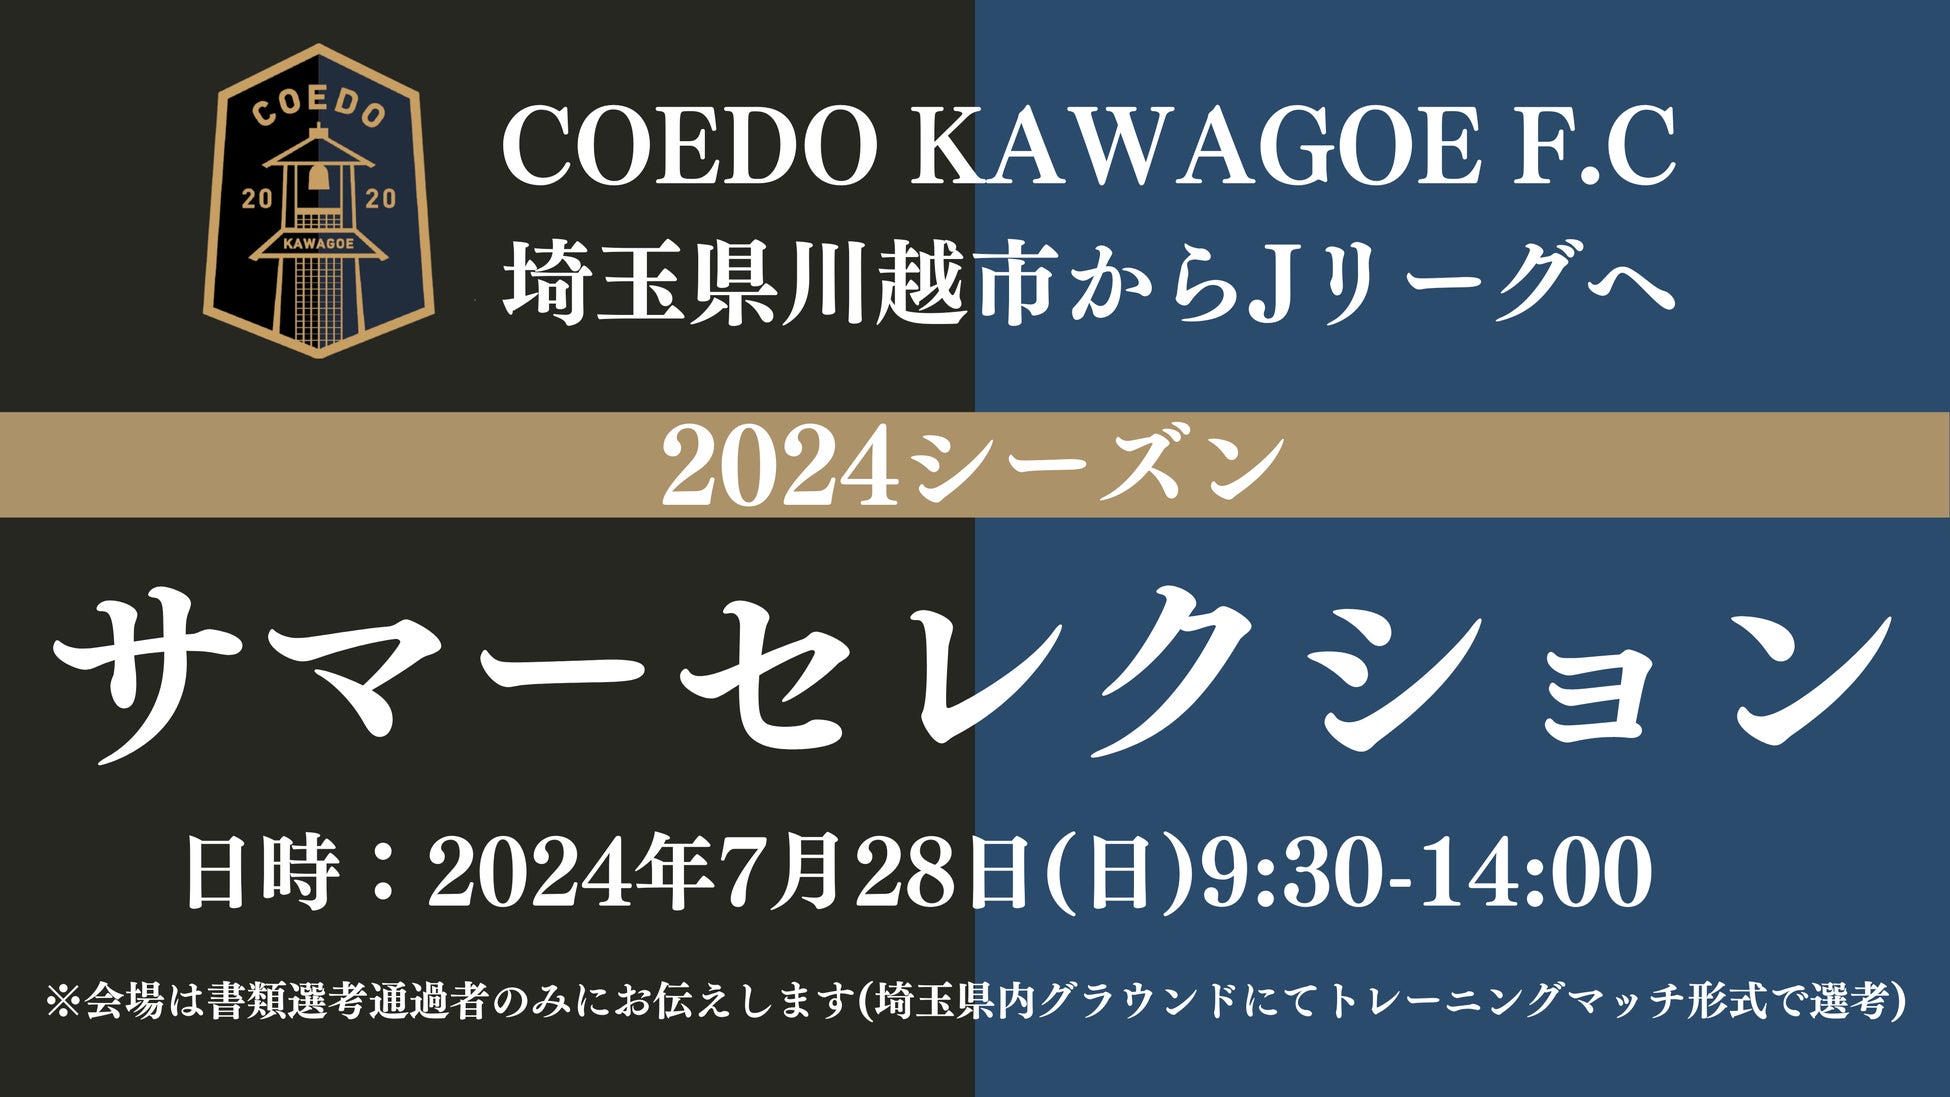 埼玉県川越市からJリーグを目指す「COEDO KAWAGOE F.C」、2024シーズンサマーセレクションを7/28(日)開催